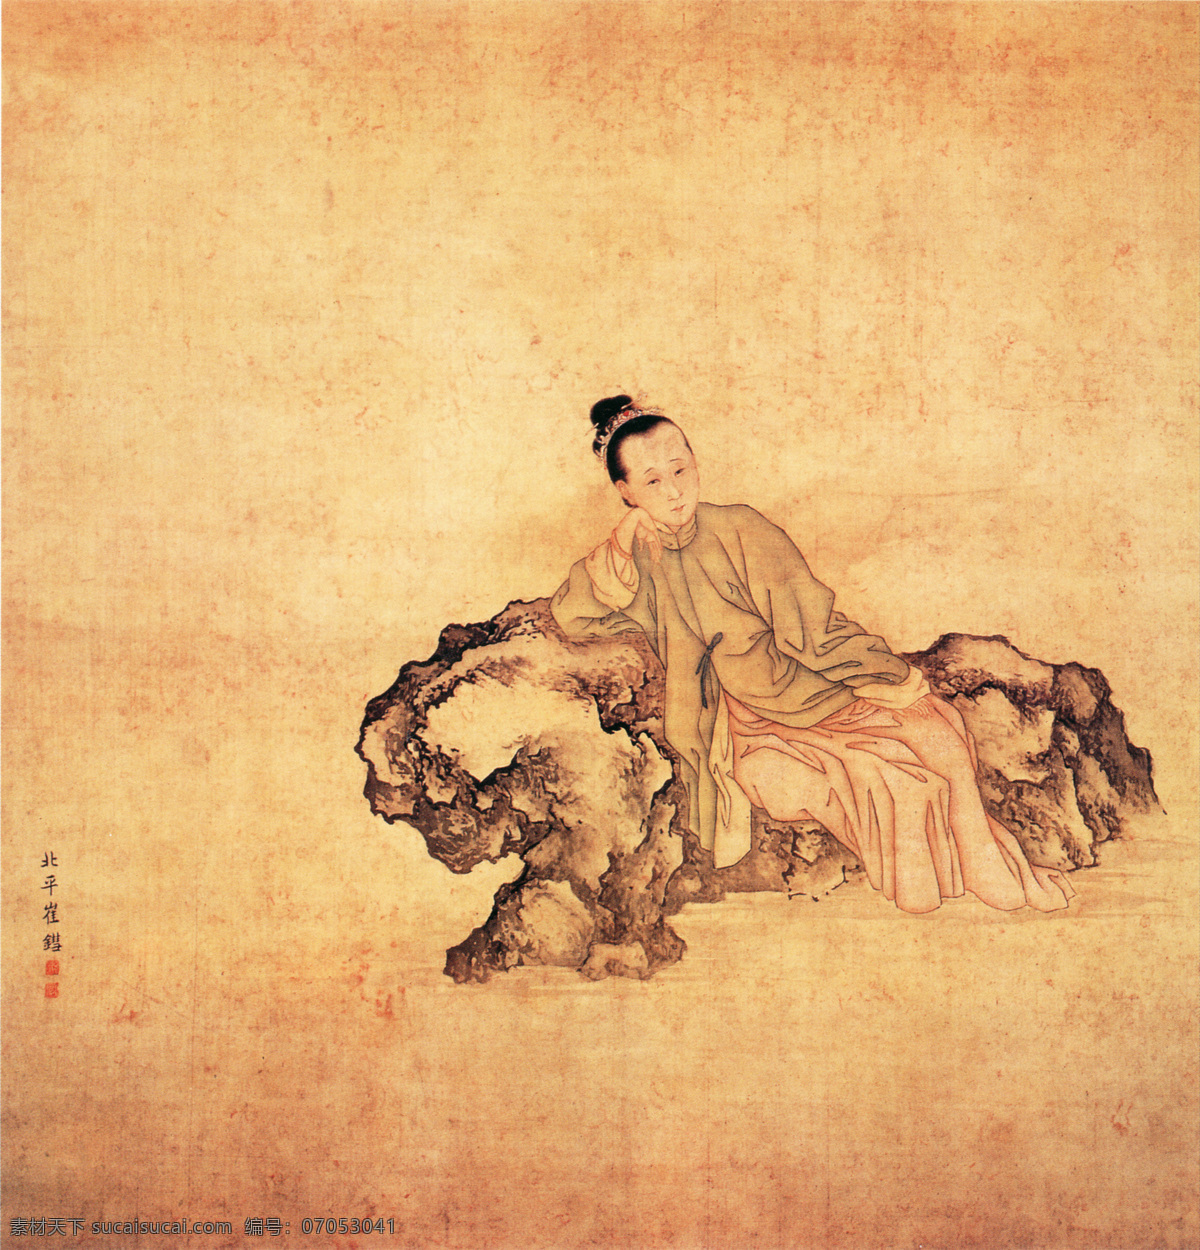 李清照像 人物画 中国 古画 中国古画 设计素材 人物名画 古典藏画 书画美术 黄色